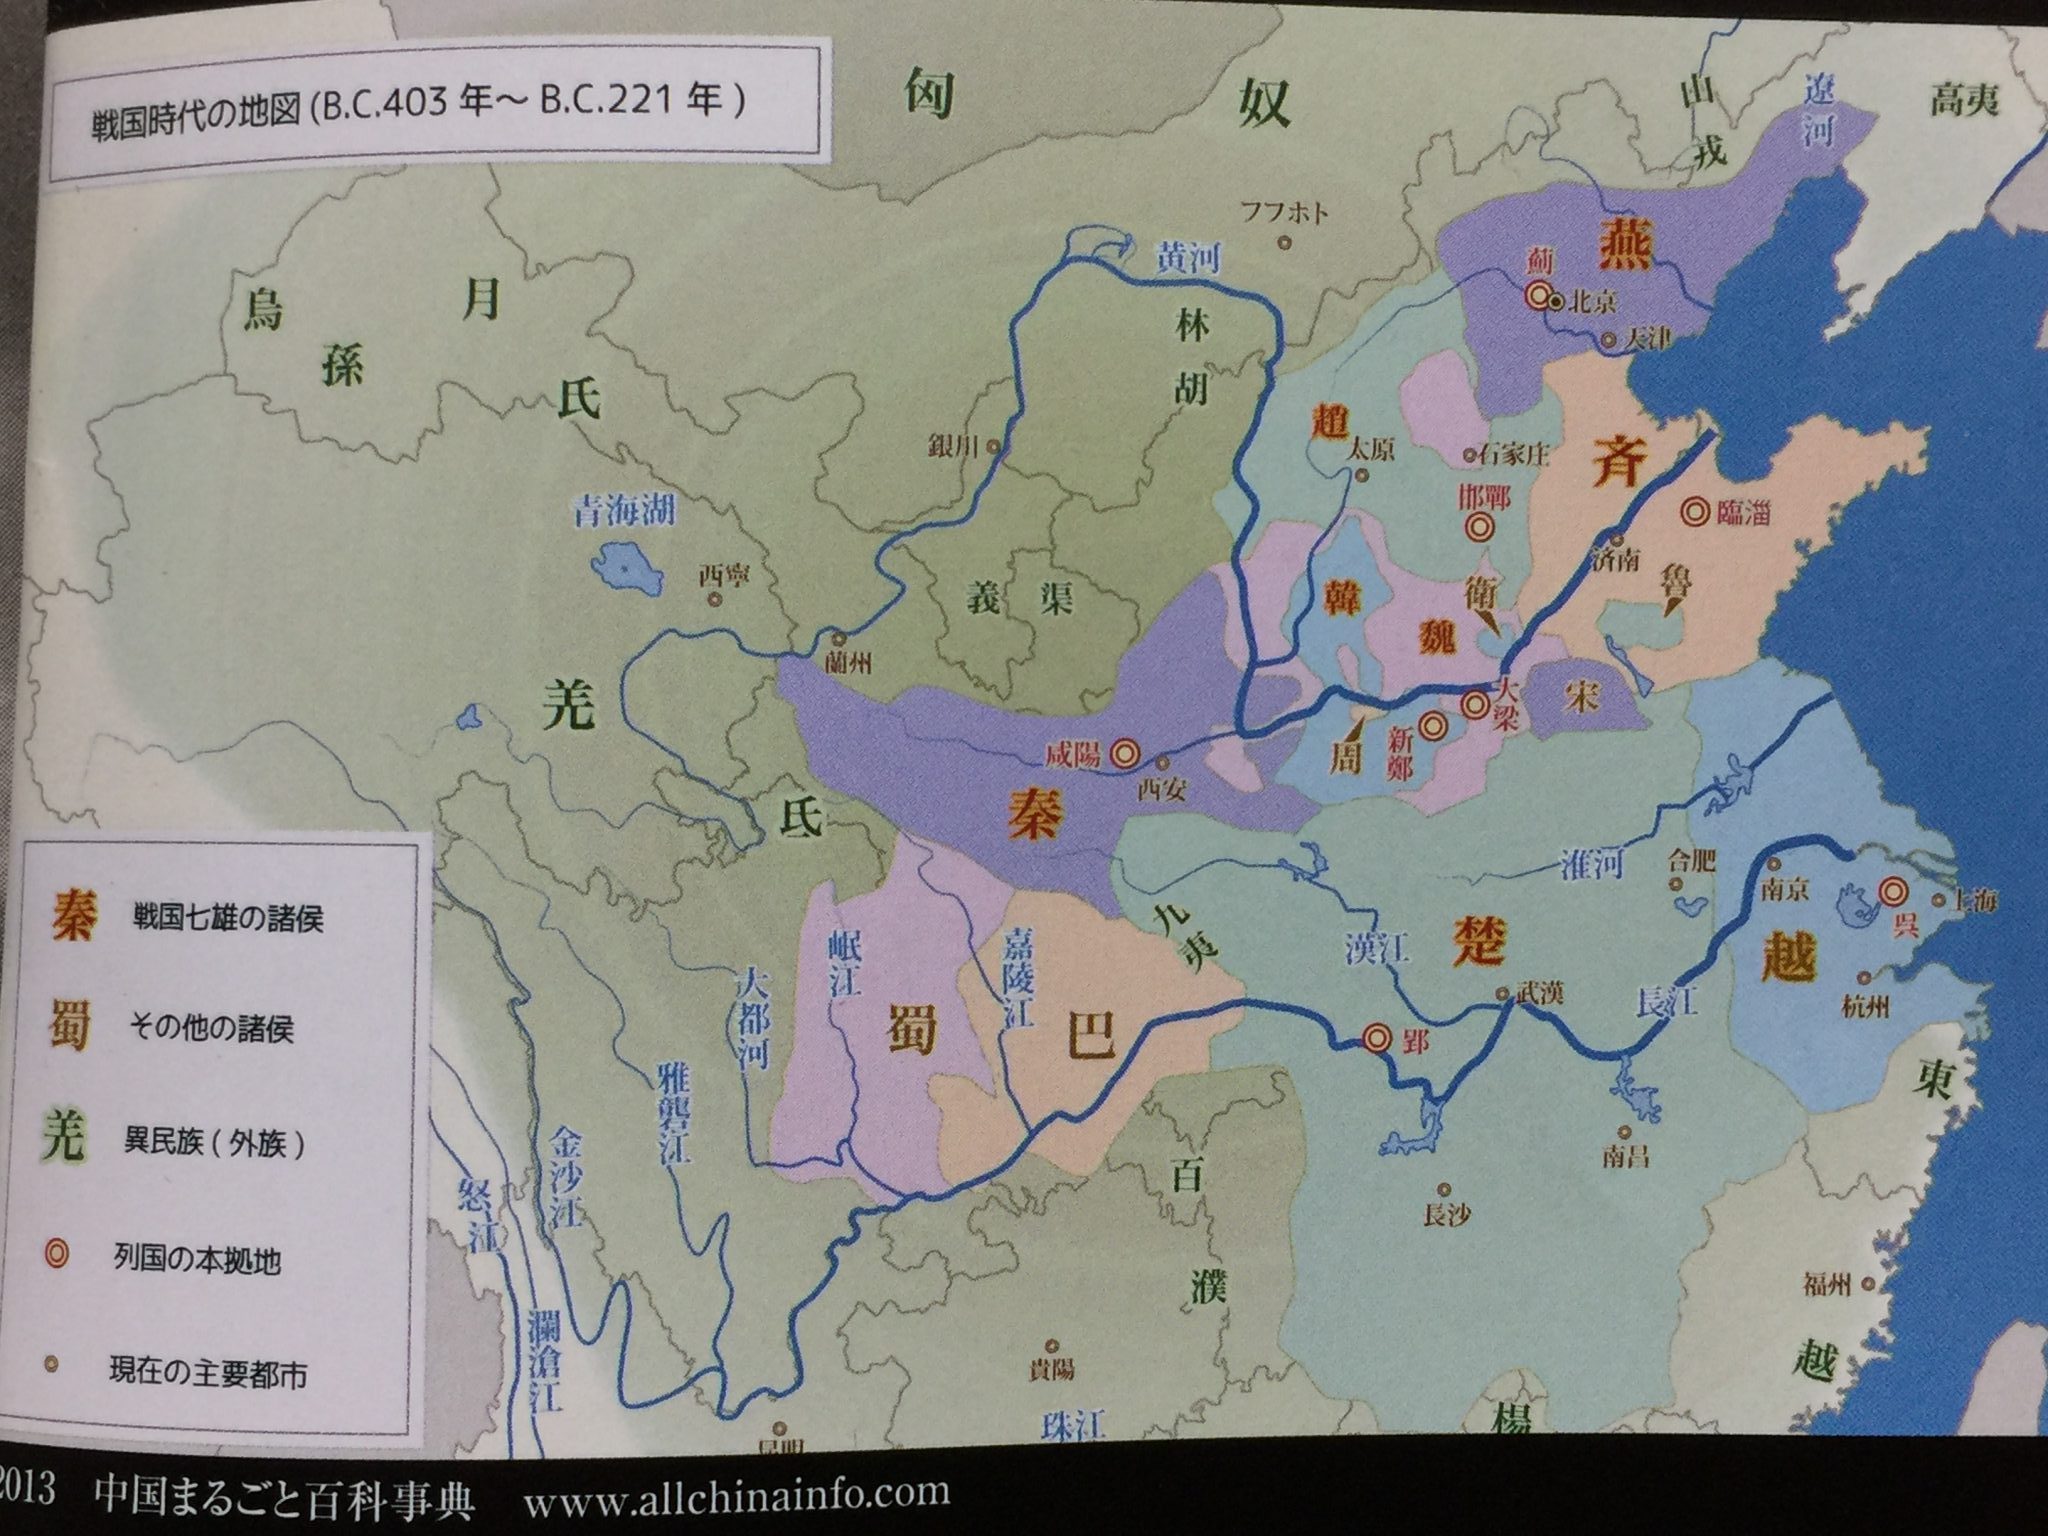 秦の統一戦争は 始皇帝が登場する５００年前から始まっていた ゆっくり歴史解説者のブログ